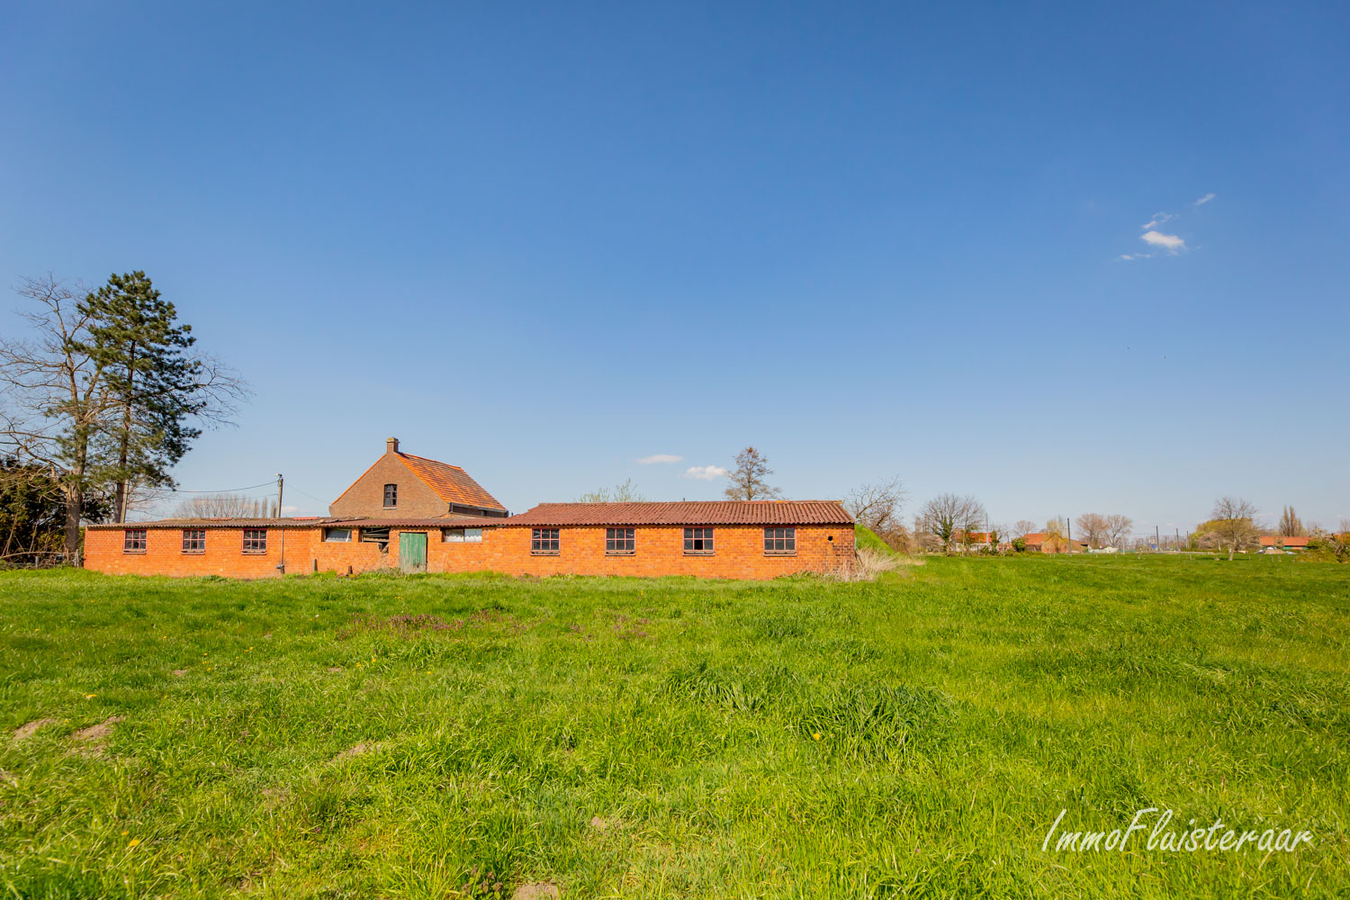 Property sold in Beveren-Waas